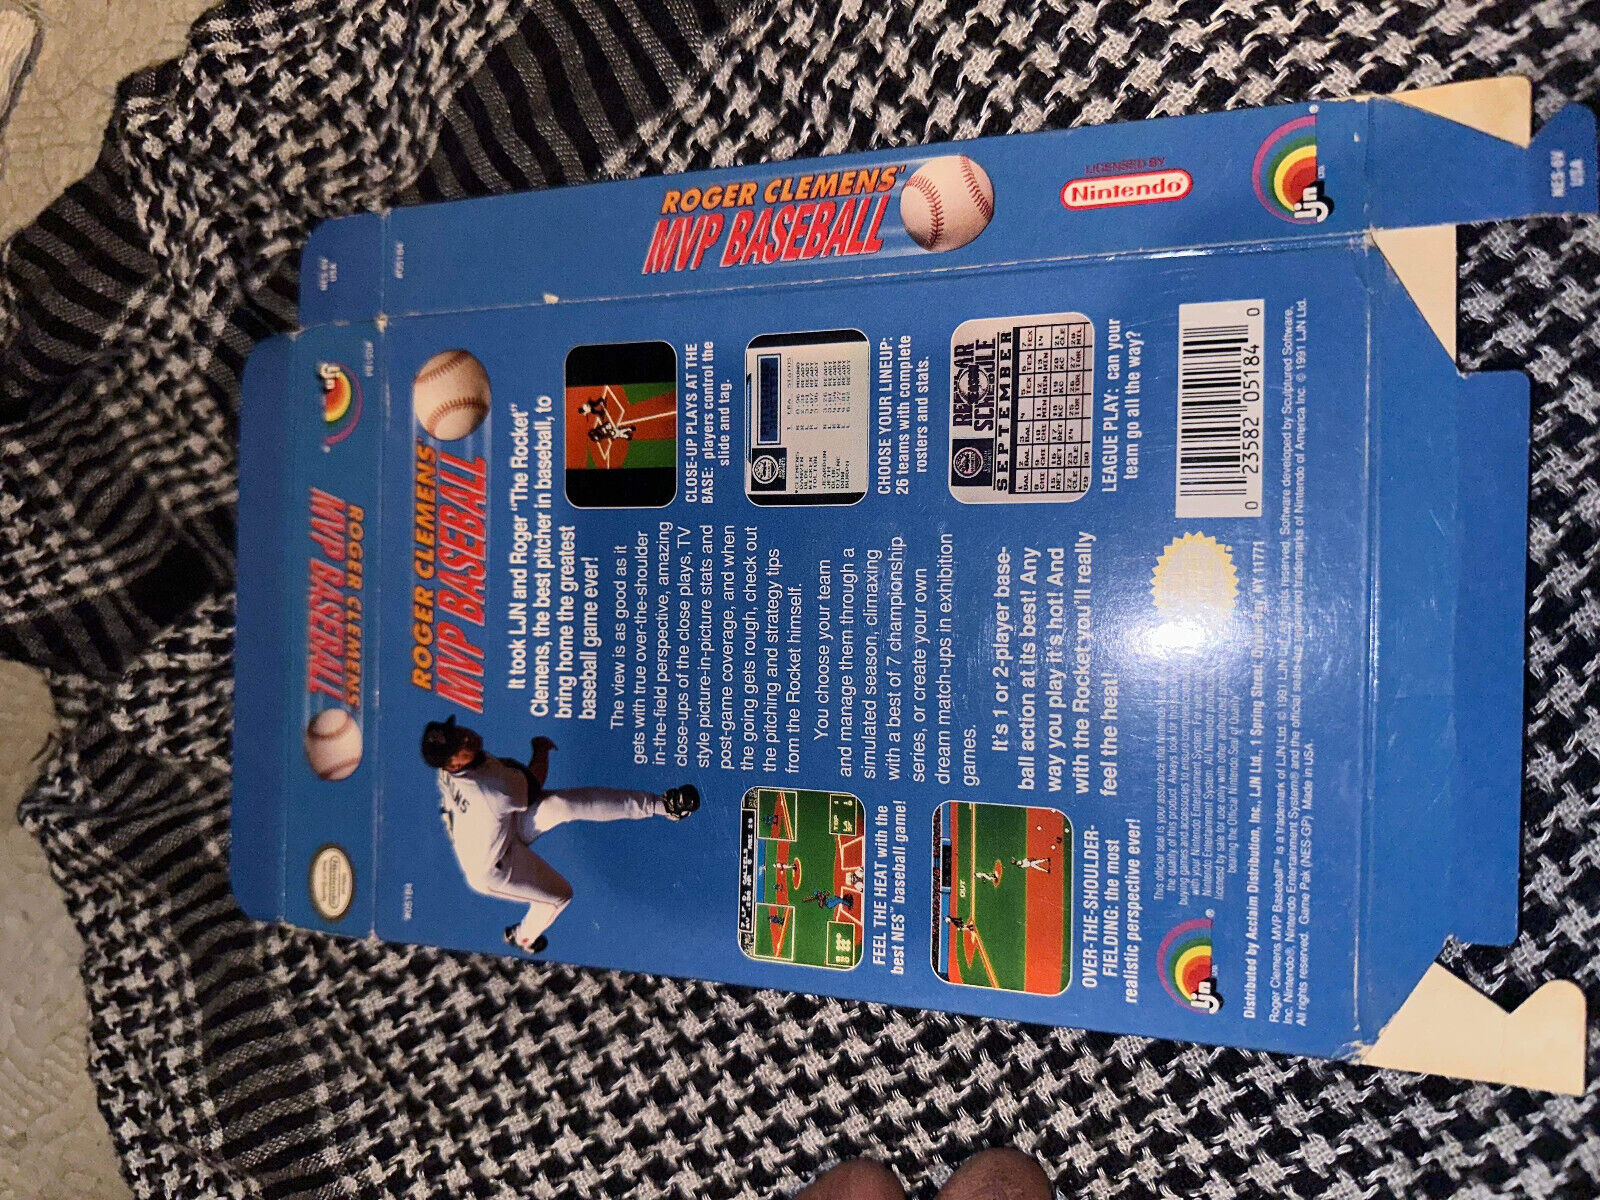 Roger Clemens' MVP Baseball Nintendo NES Box Only!